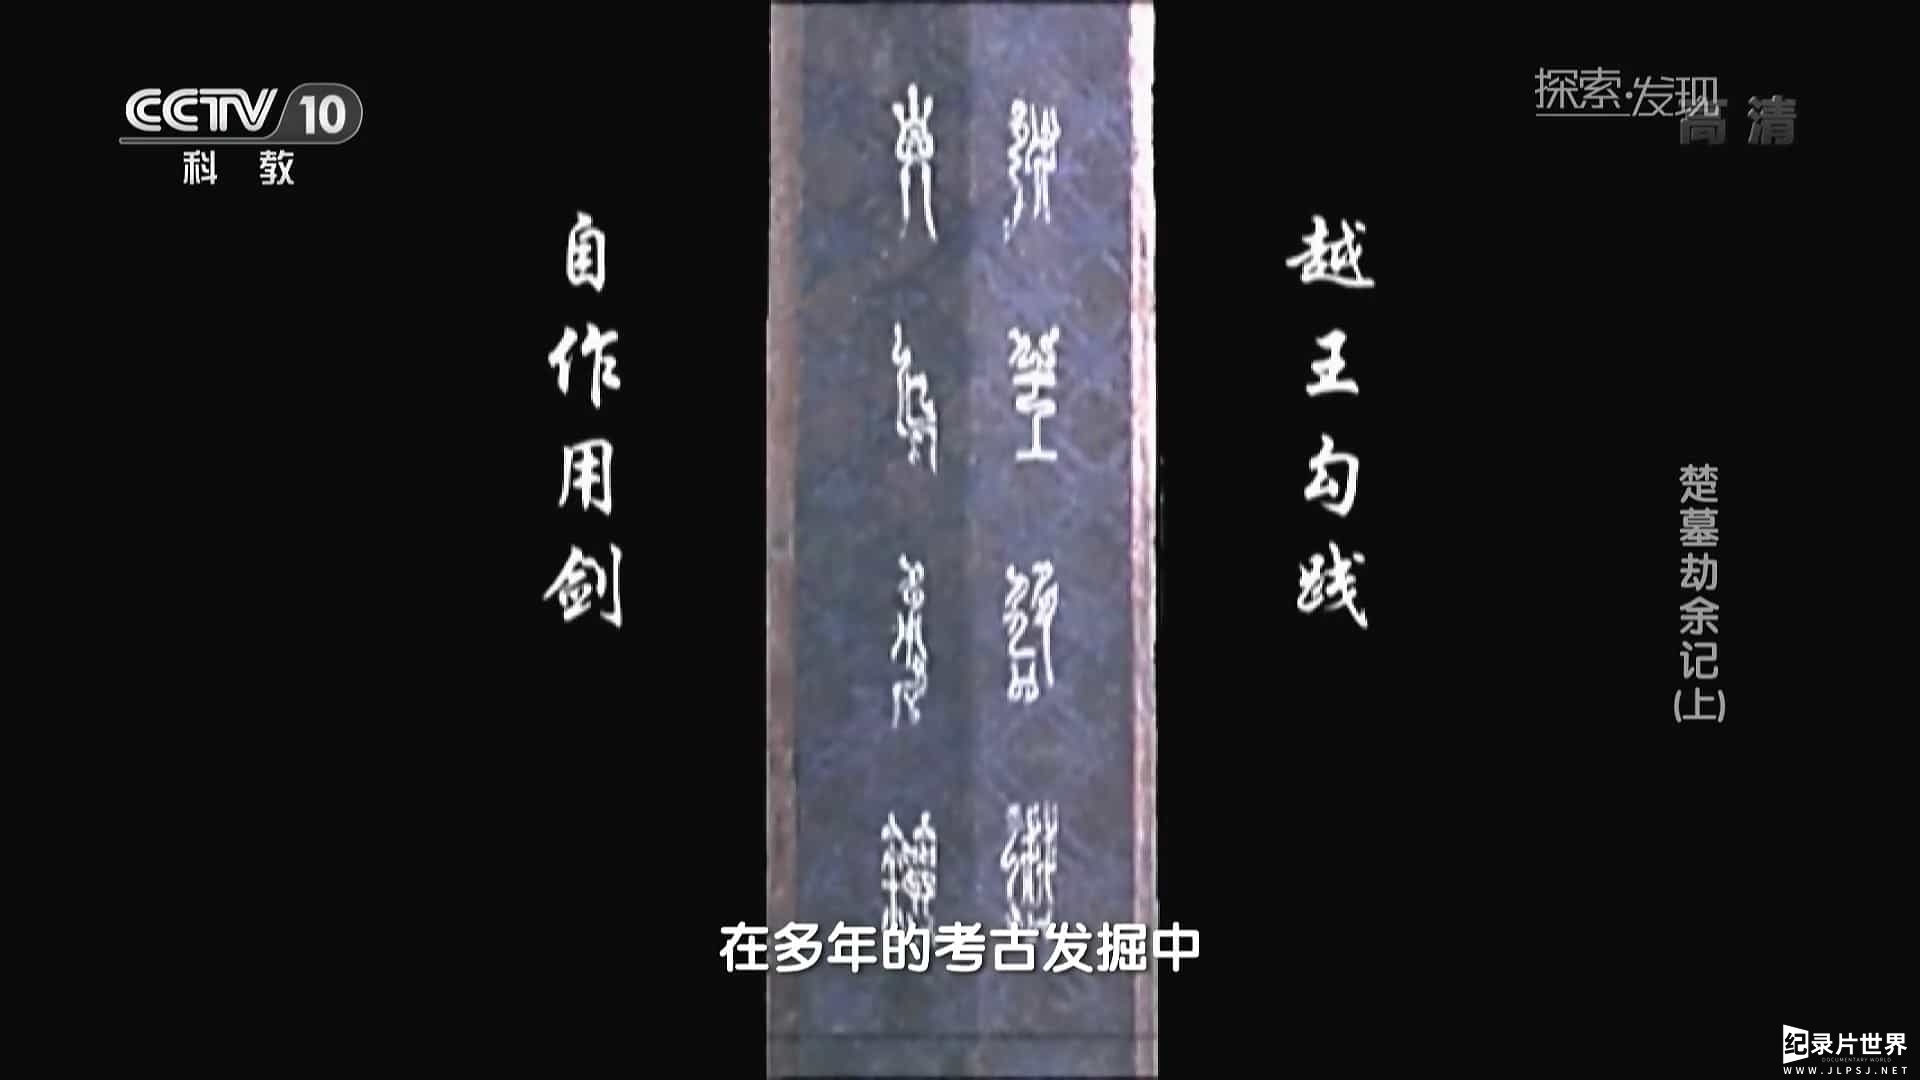 央视纪录片/中国考古纪录片《探索发现 楚墓劫余记》全1集